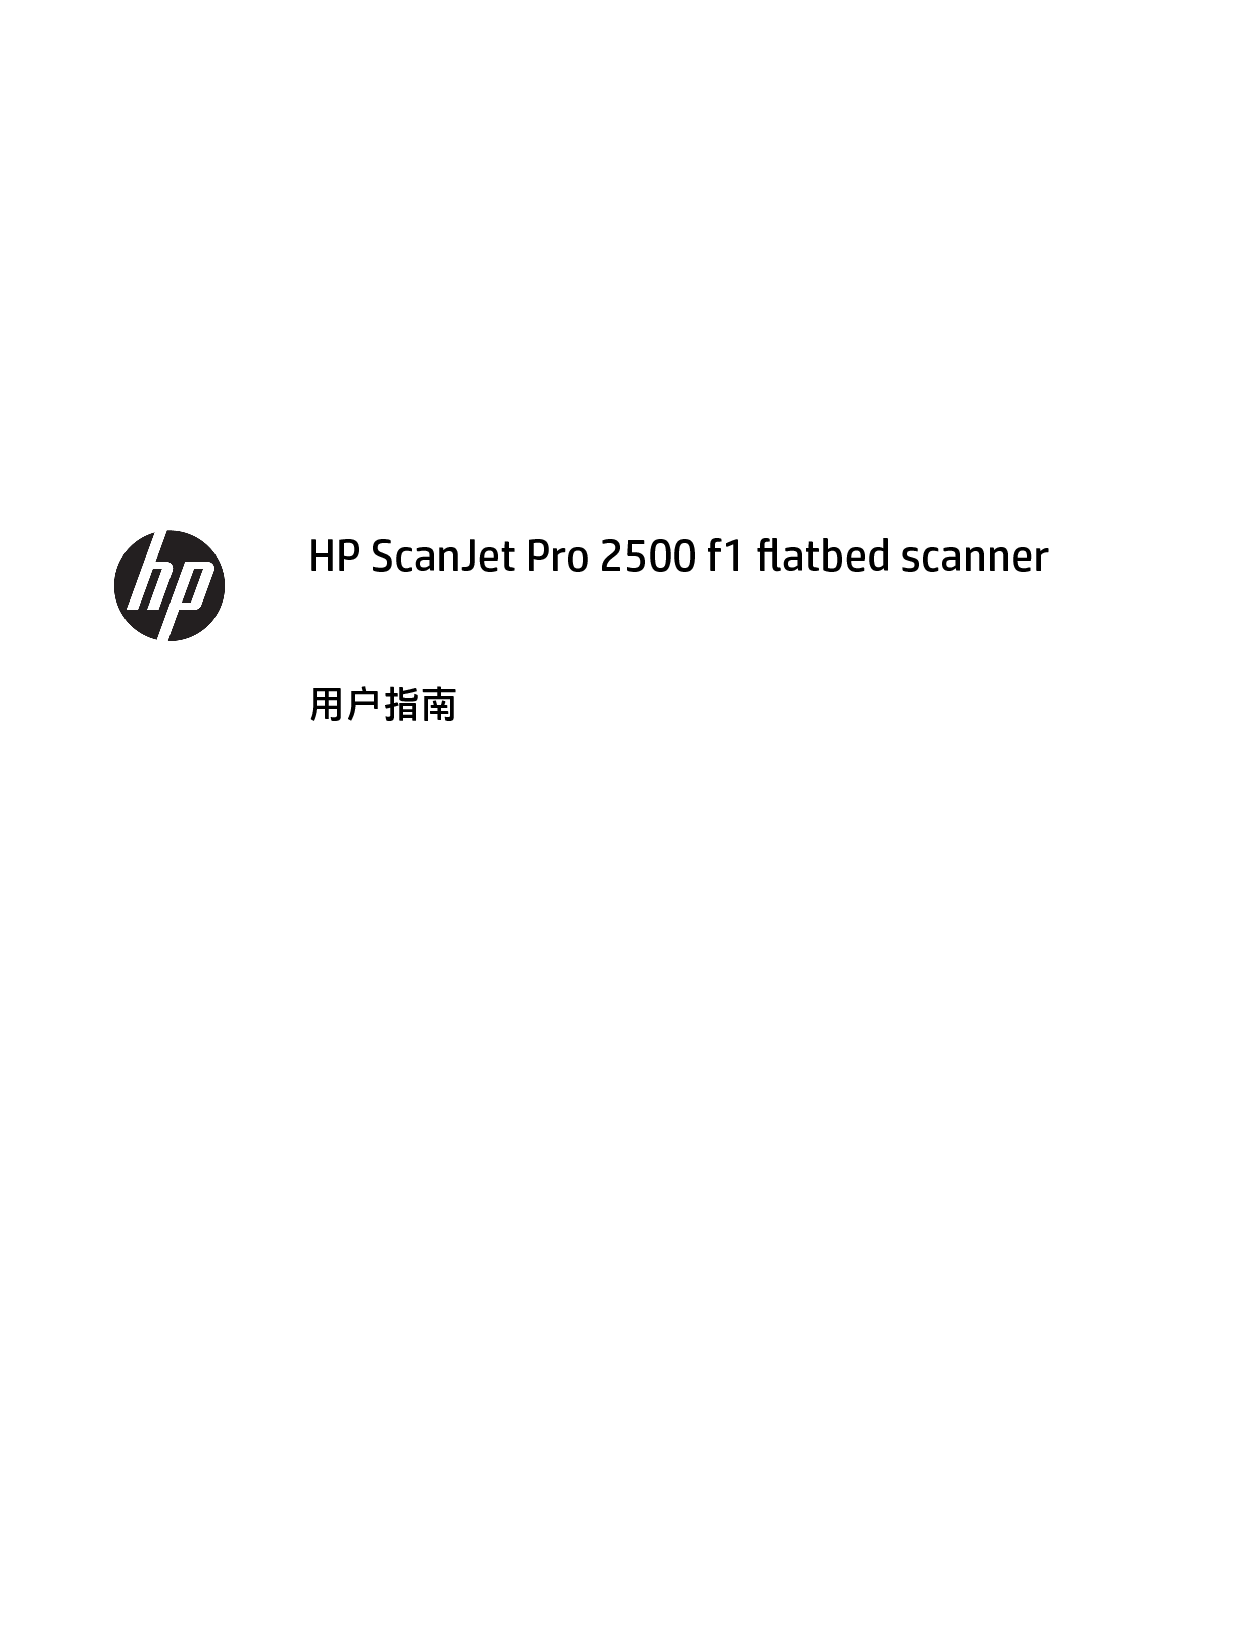 惠普 HP Scanjet Pro 2500 f1 用户指南 第2页